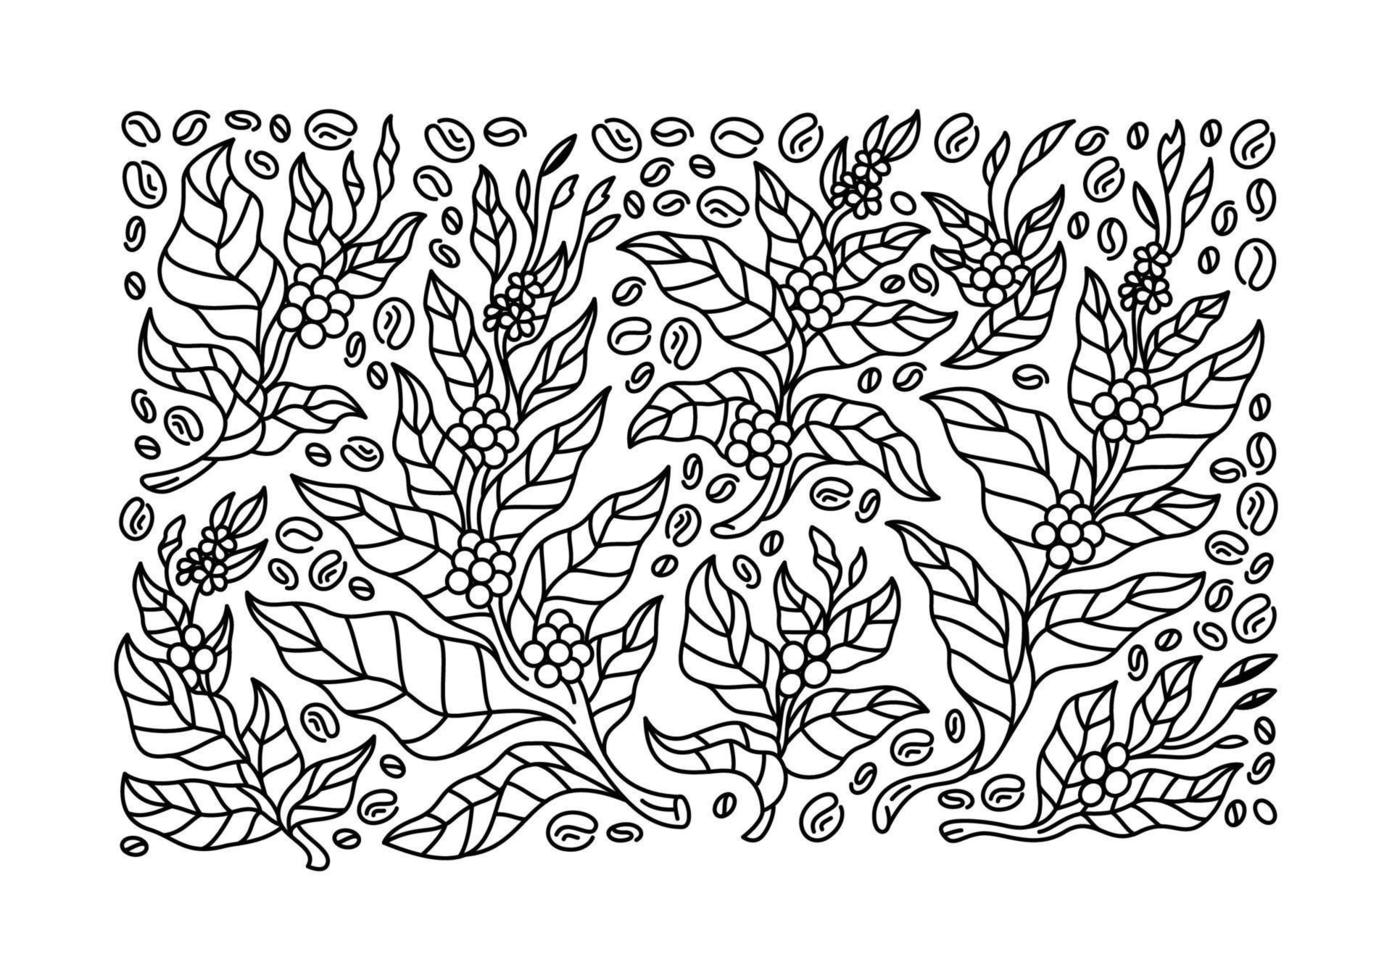 reeks van koffie boom takken met bloemen, bladeren en bonen. plantkunde tekening, lijn kunst ontwerp. vector